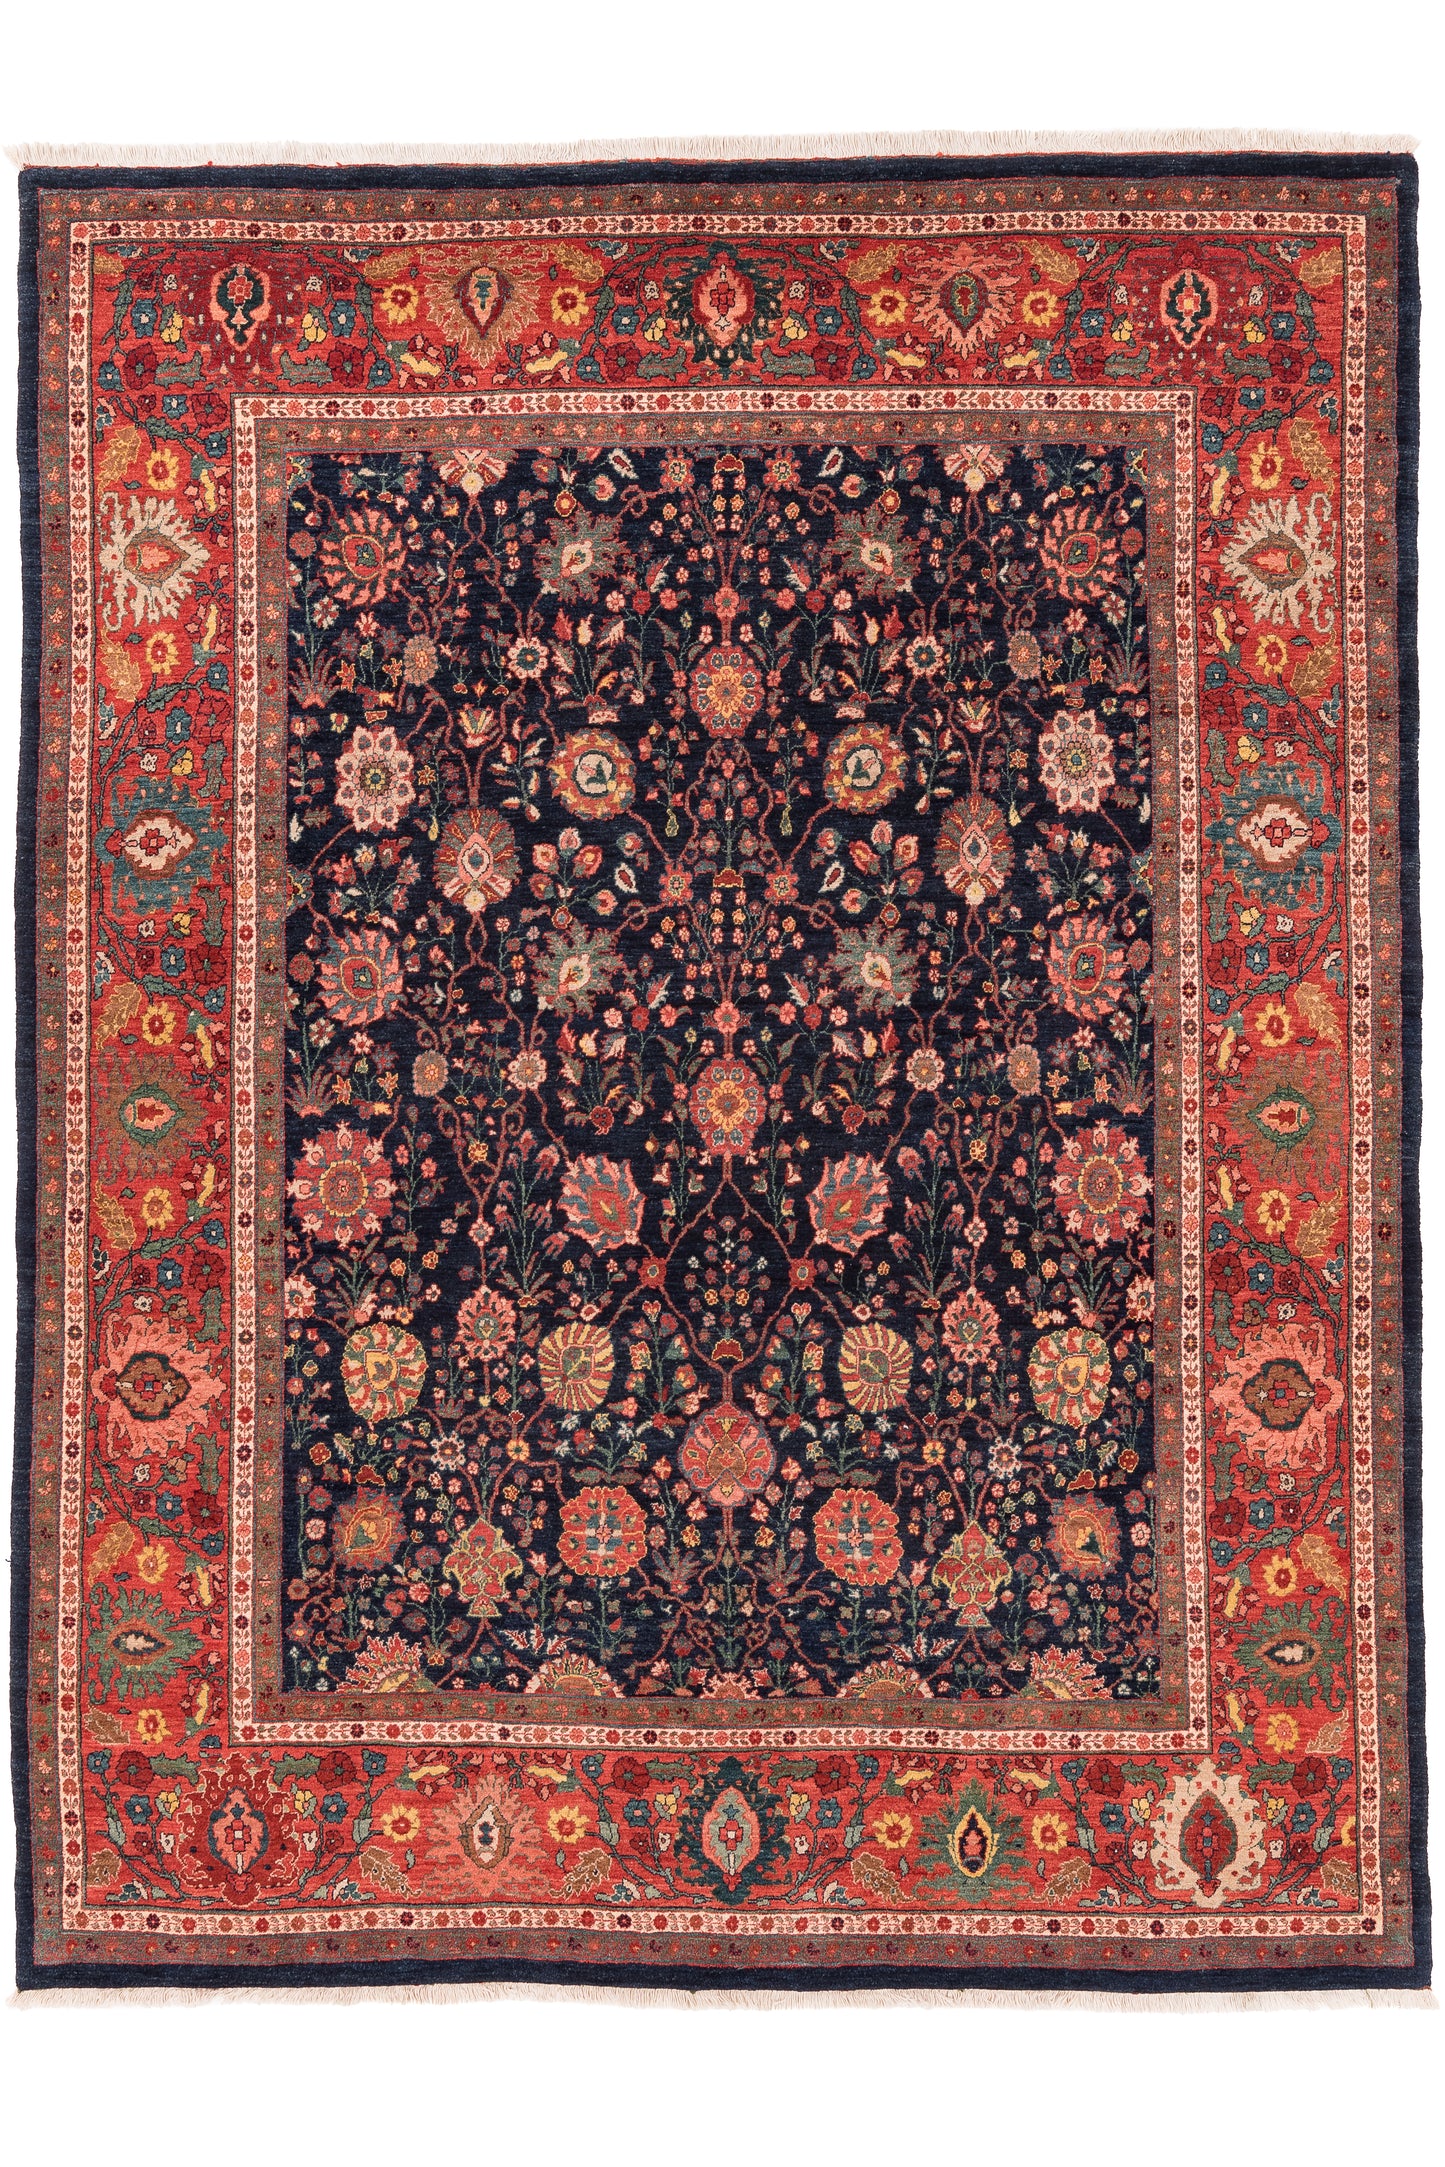 Bidjar Mirzai, 326 × 256 cm